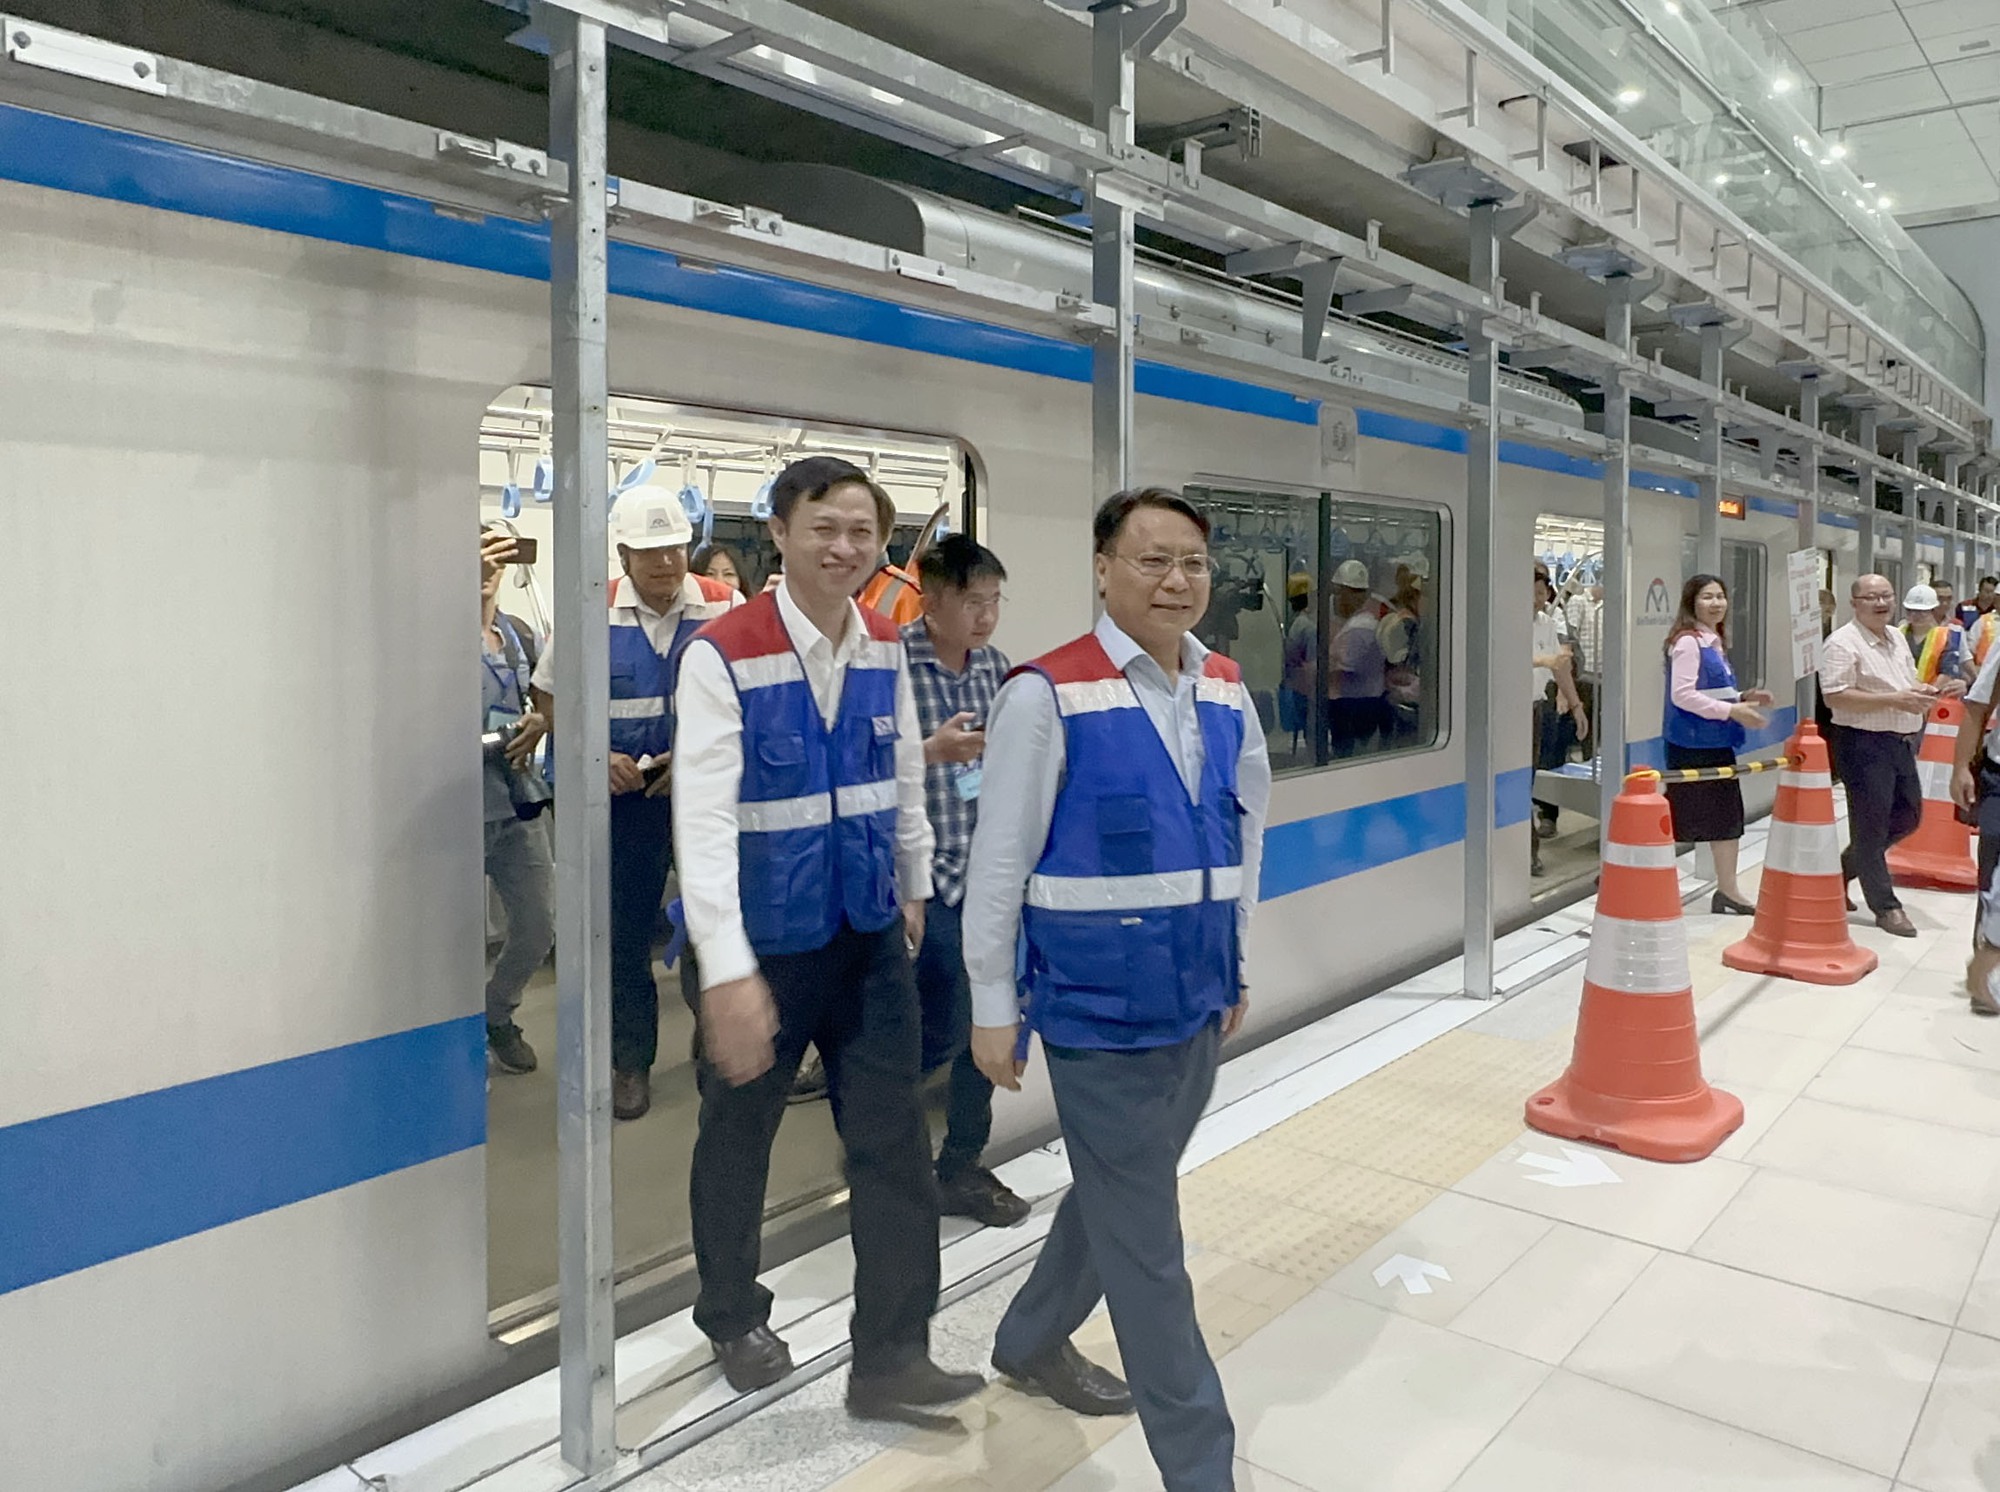 Video trải nghiệm trên tuyến metro Bến Thành - Suối Tiên - Ảnh 8.